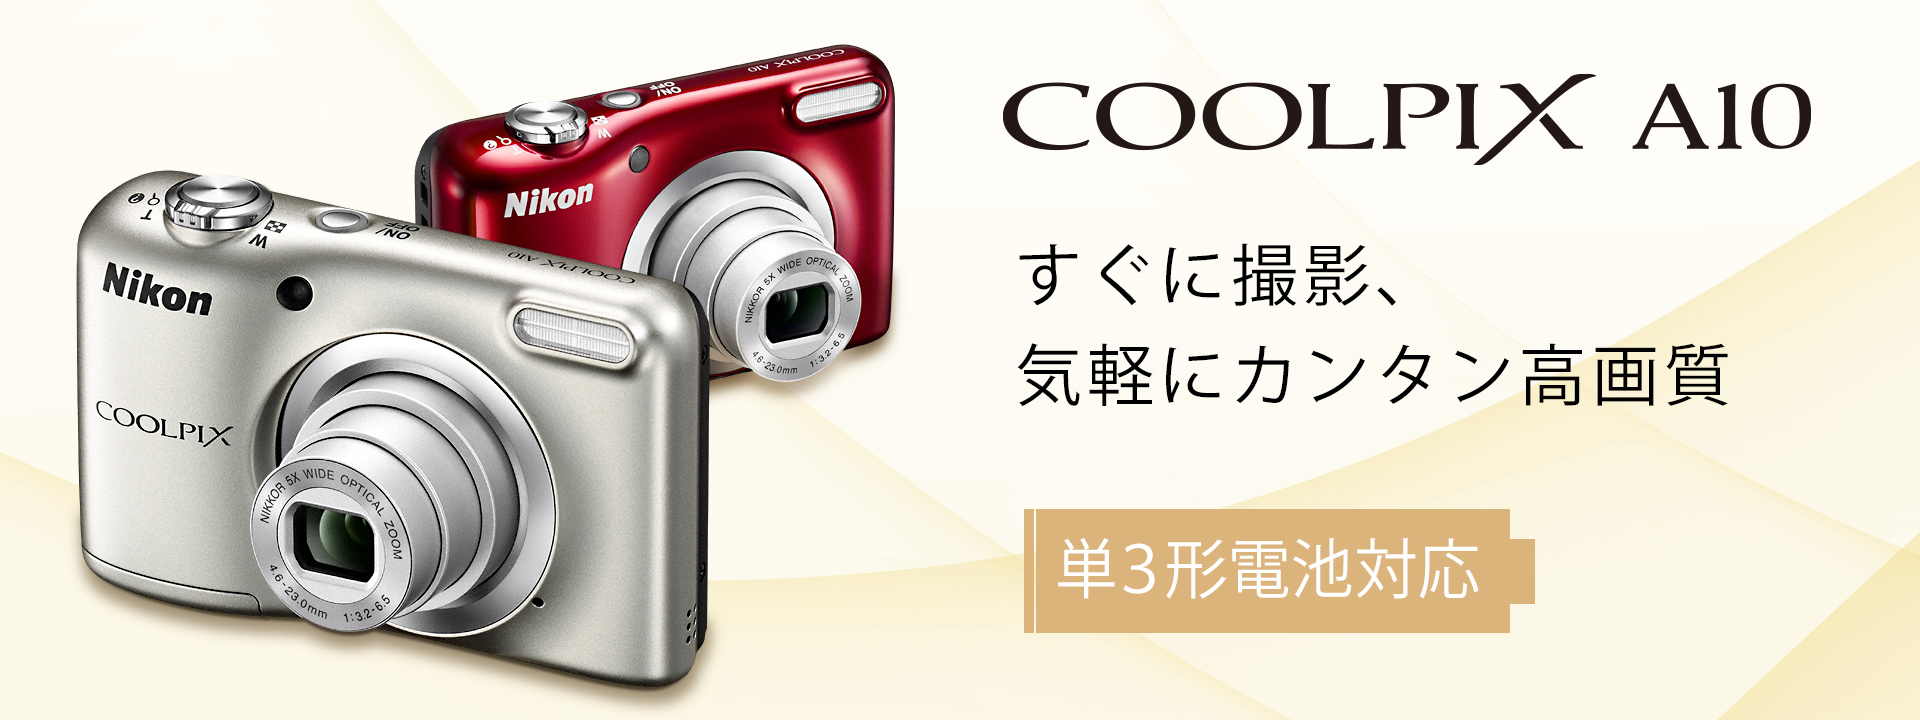 COOLPIX A10 - 概要 | コンパクトデジタルカメラ | ニコンイメージング